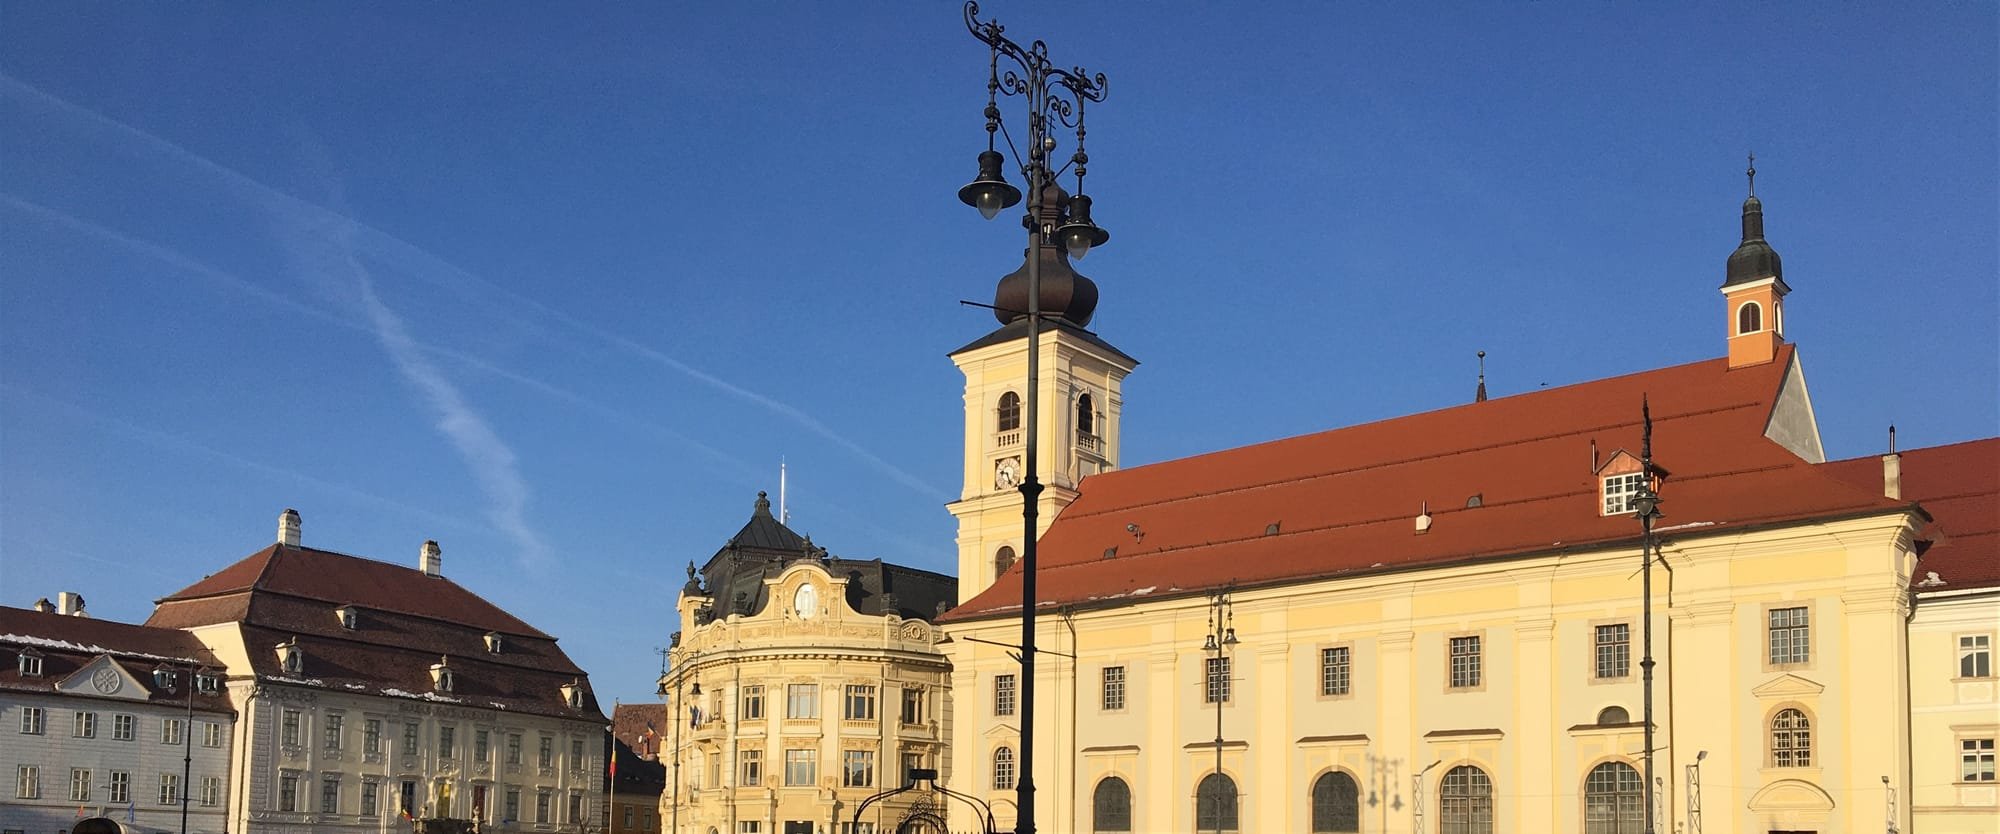 Lista monumentelor istorice din municipiul Sibiu